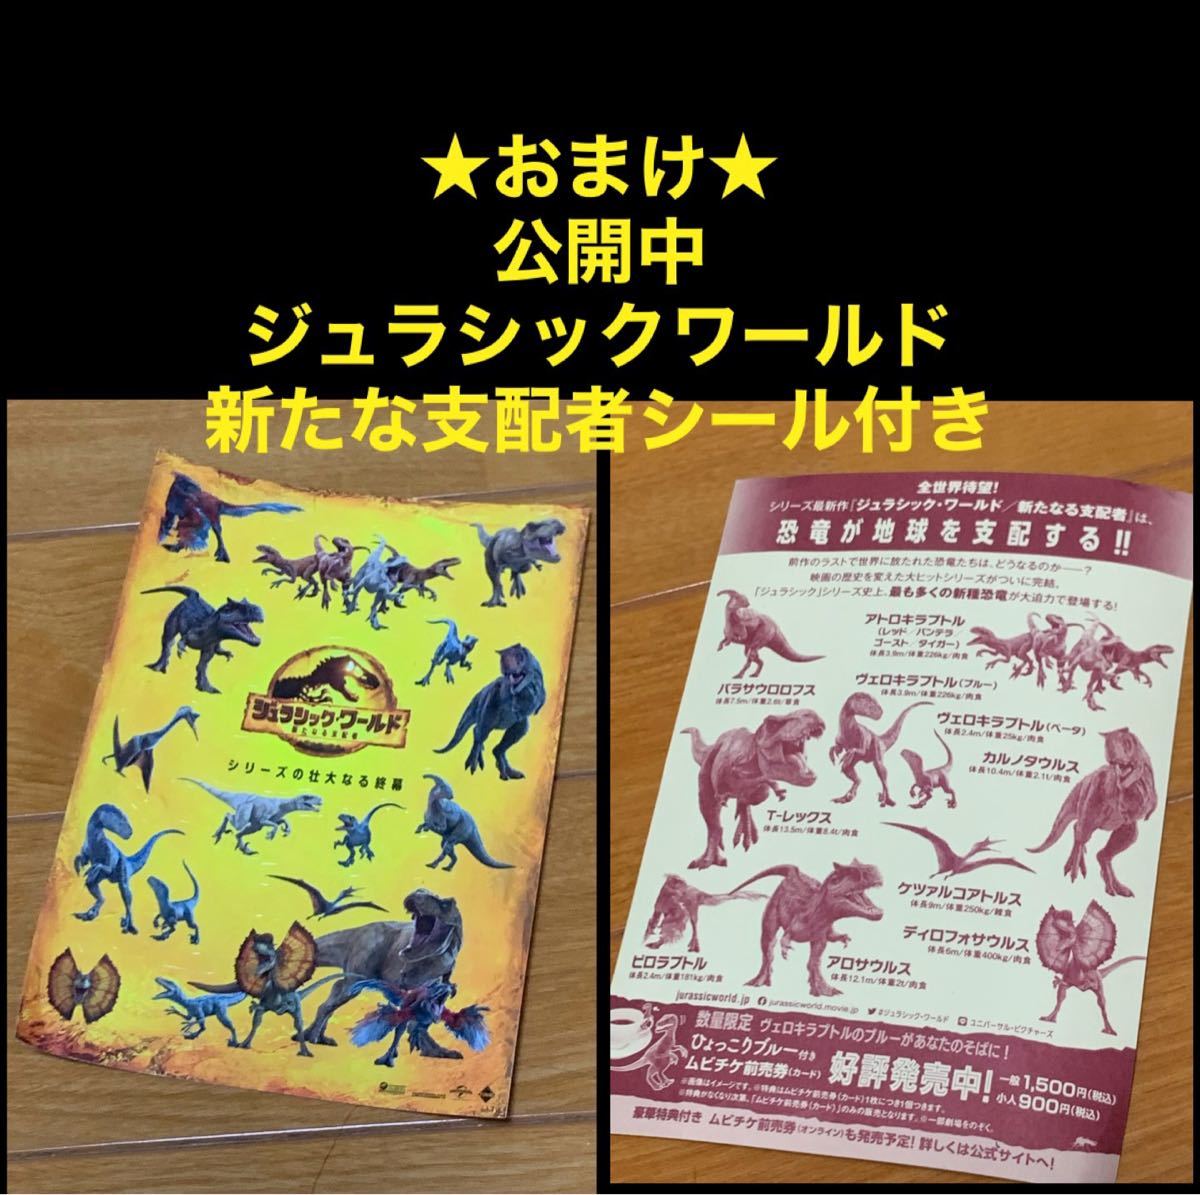 【送料無料】ジュラシック シリーズ パーク&ワールド DVD 5点 セット